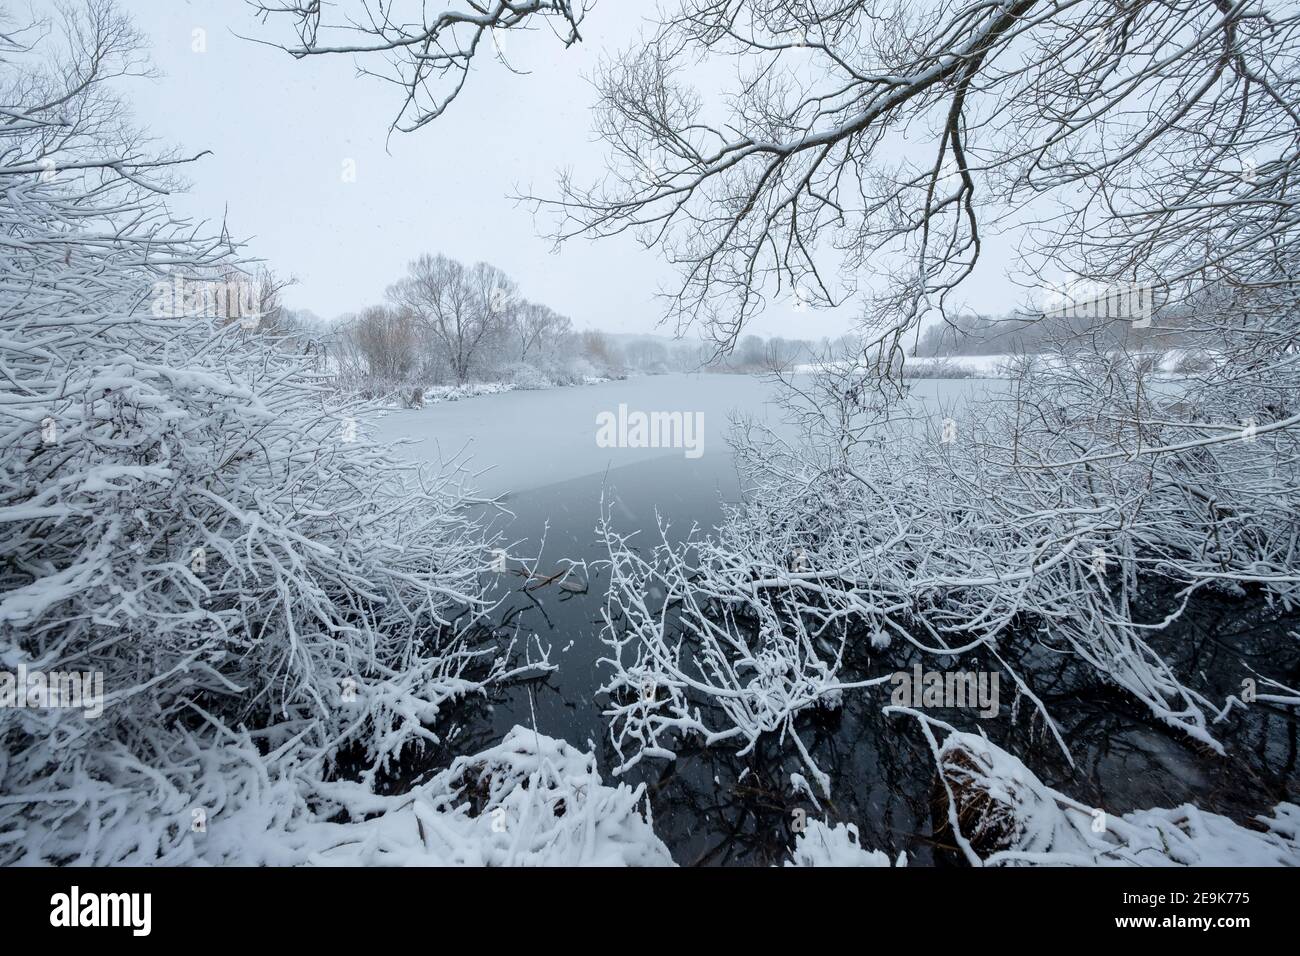 paysage d'hiver enneigé dans une ambiance calme et tranquille avec un lac entouré d'arbres Banque D'Images